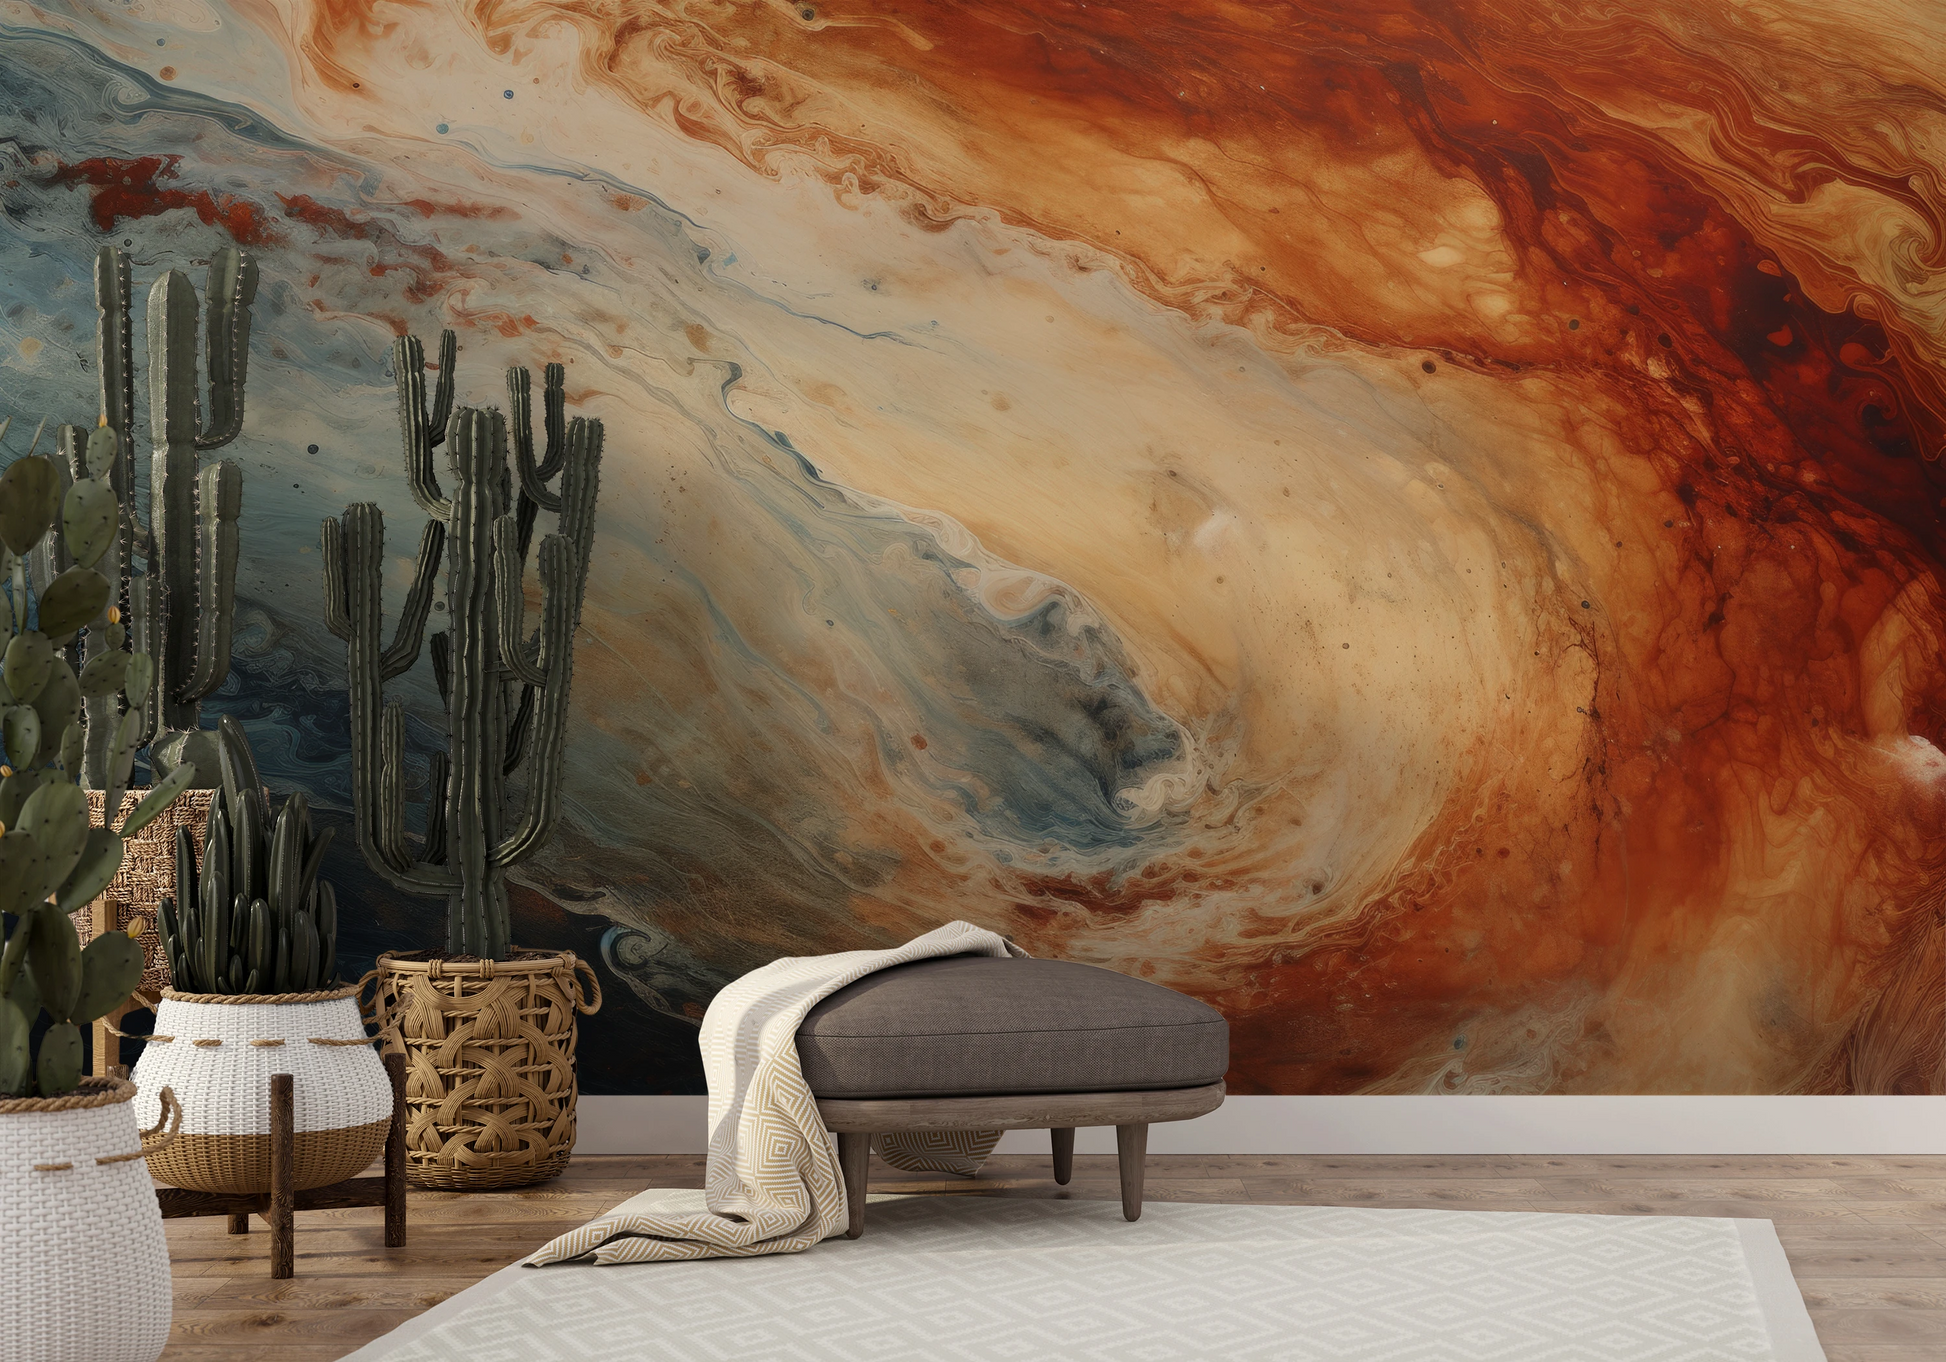 Fototapeta artystyczna o nazwie Jupiter's Storm #2 pokazana w aranżacji wnętrza.